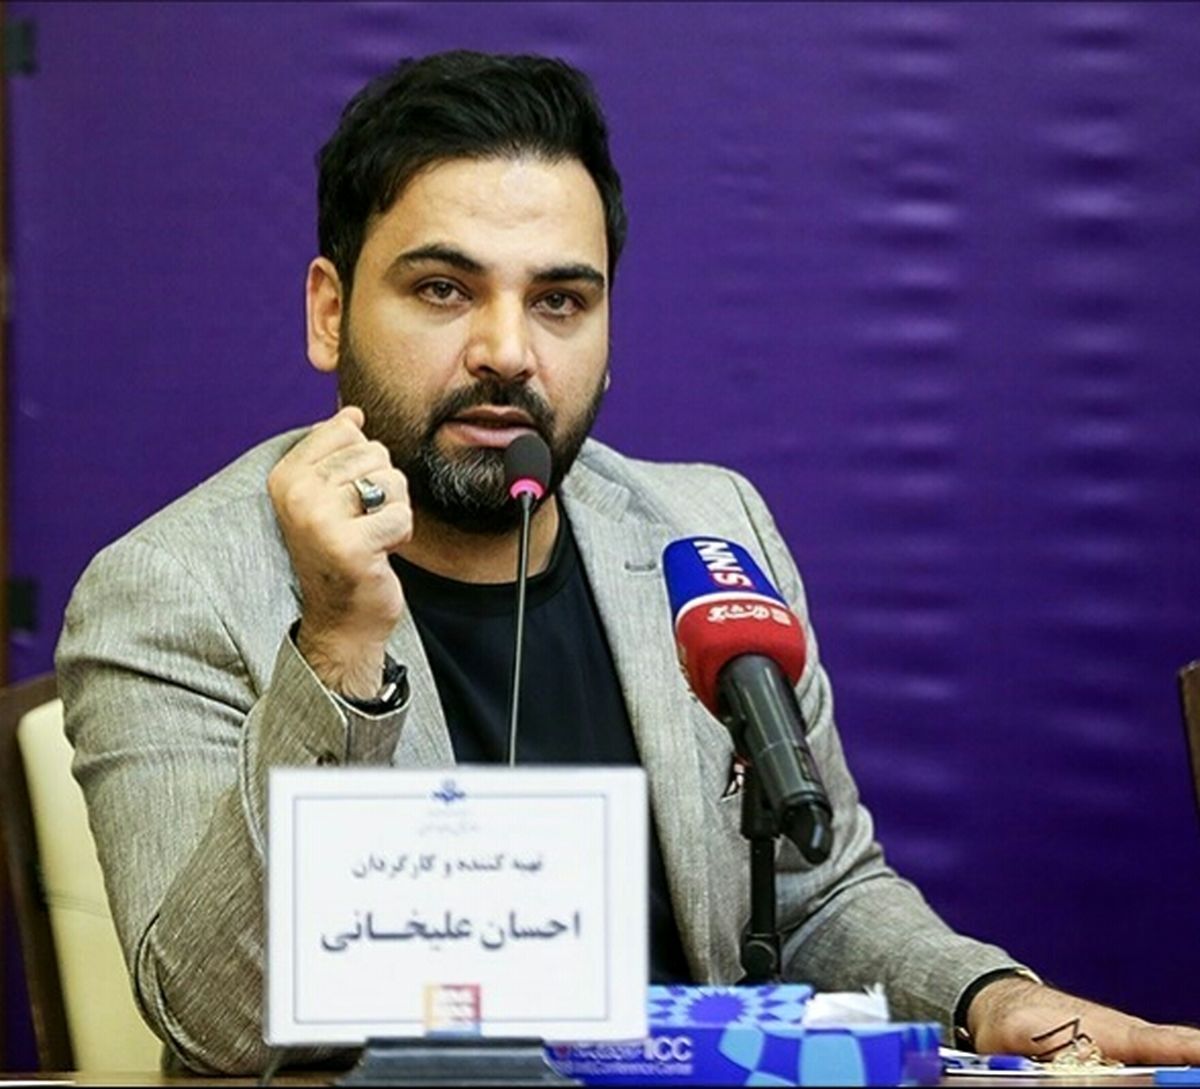 واکنش تند احسان علیخانی به جواب عجیب وزیر آموزش و پروش درباره دربی